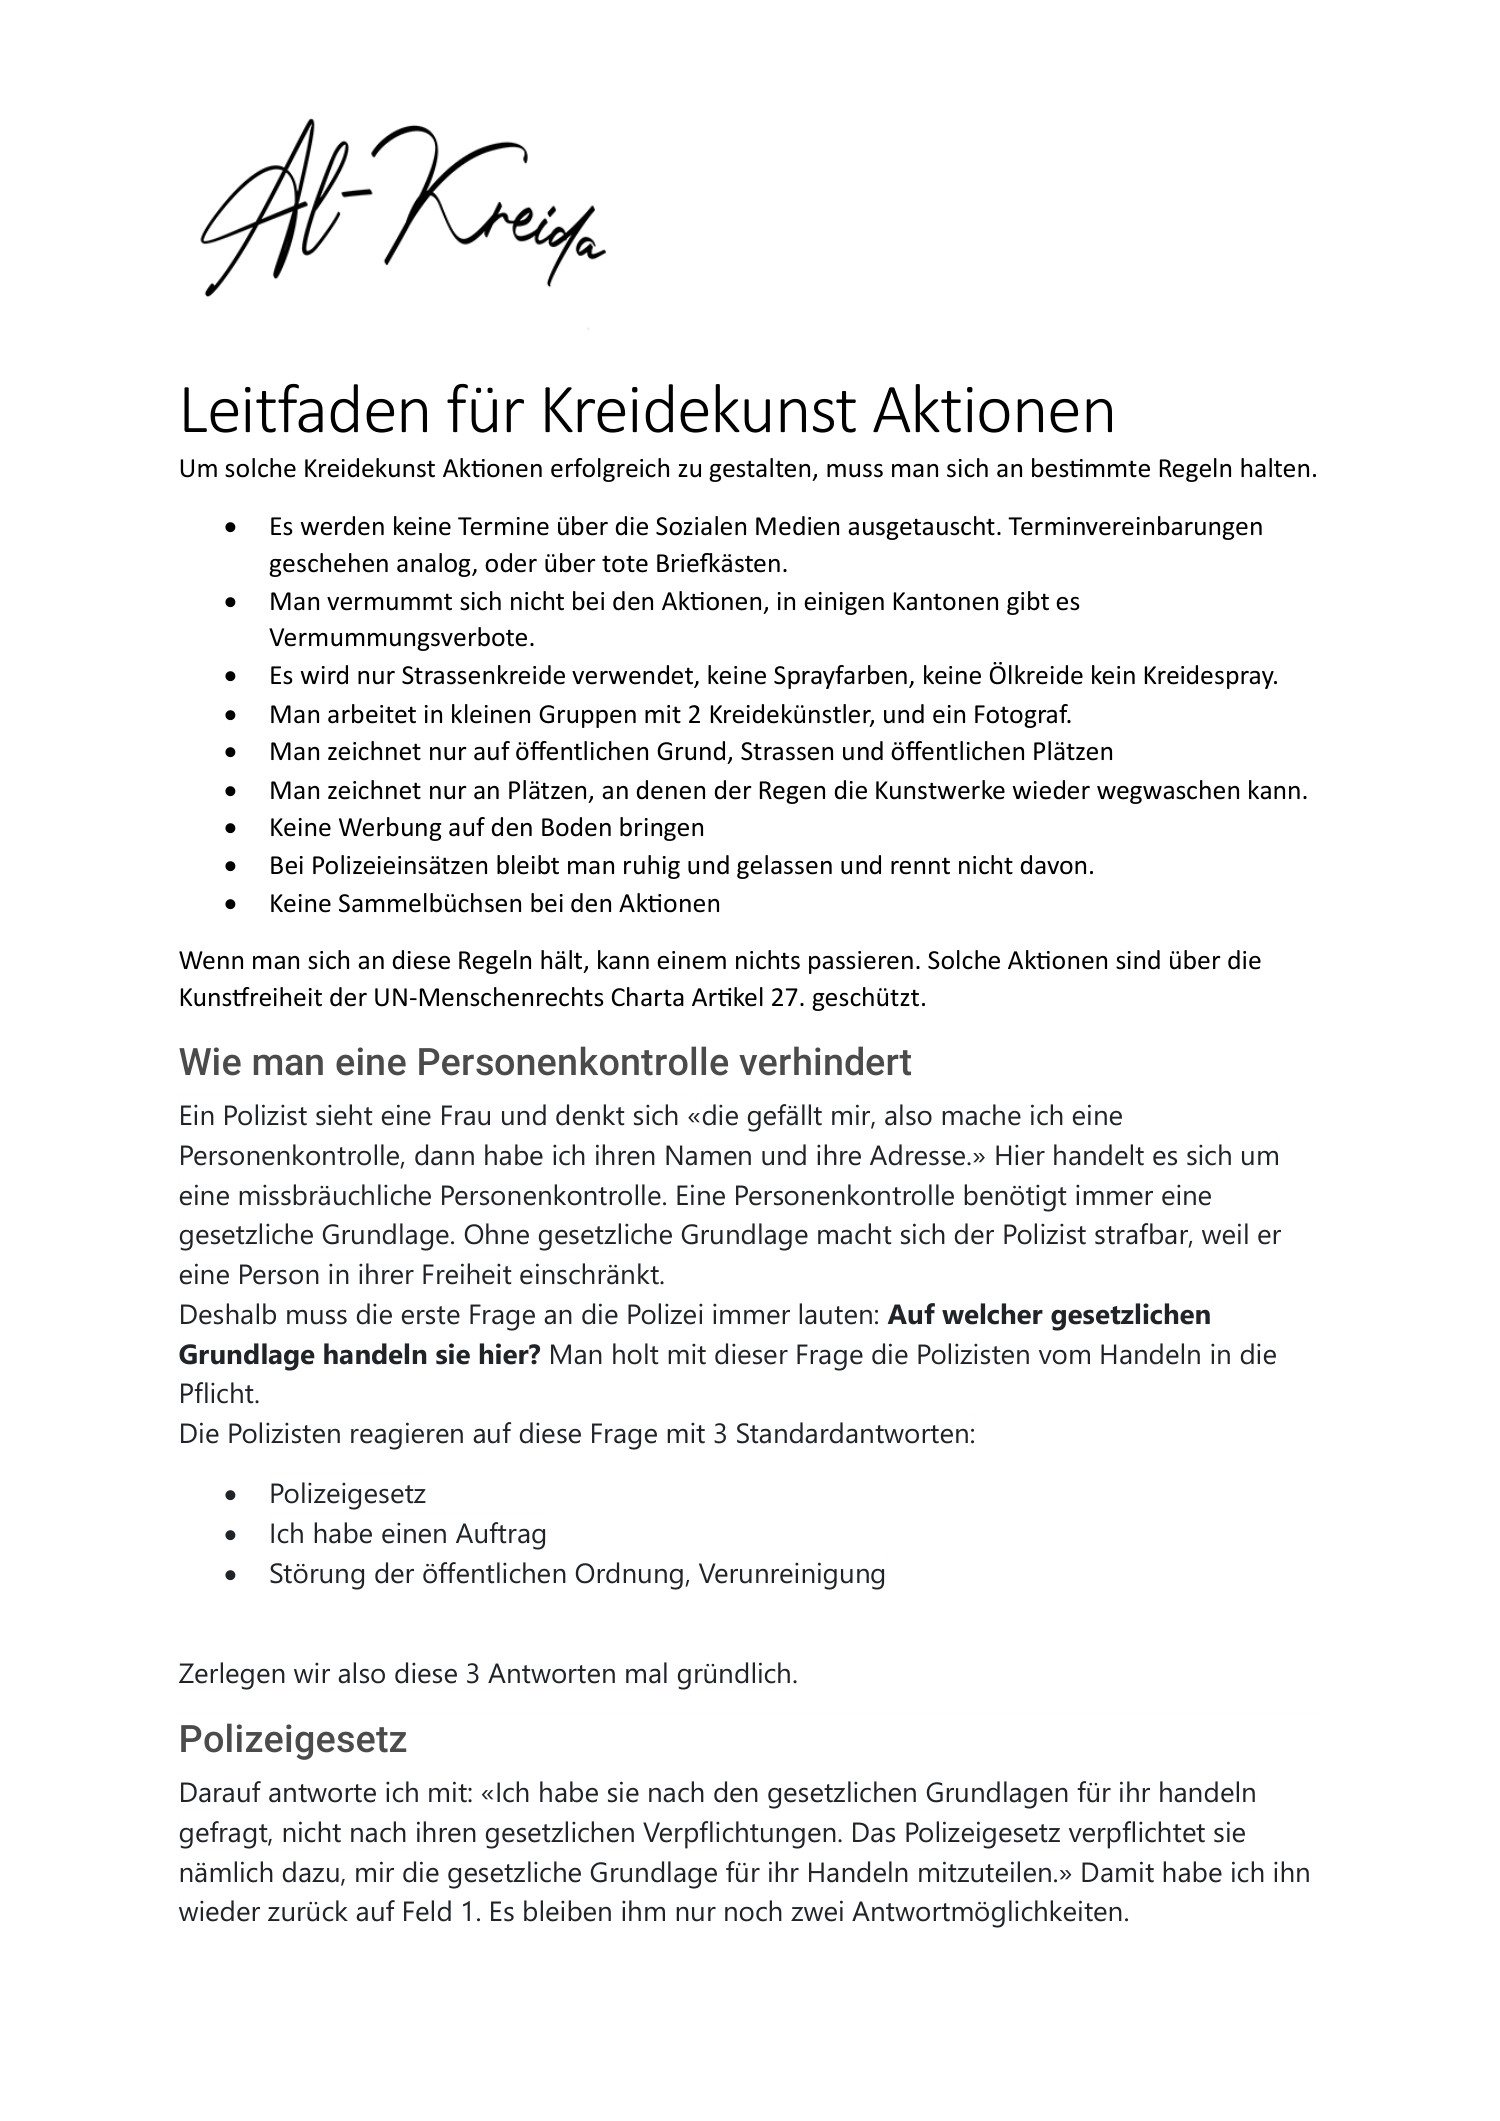 Leitfaden für Kreidekunst Aktionen-Al-Kreida.pdf